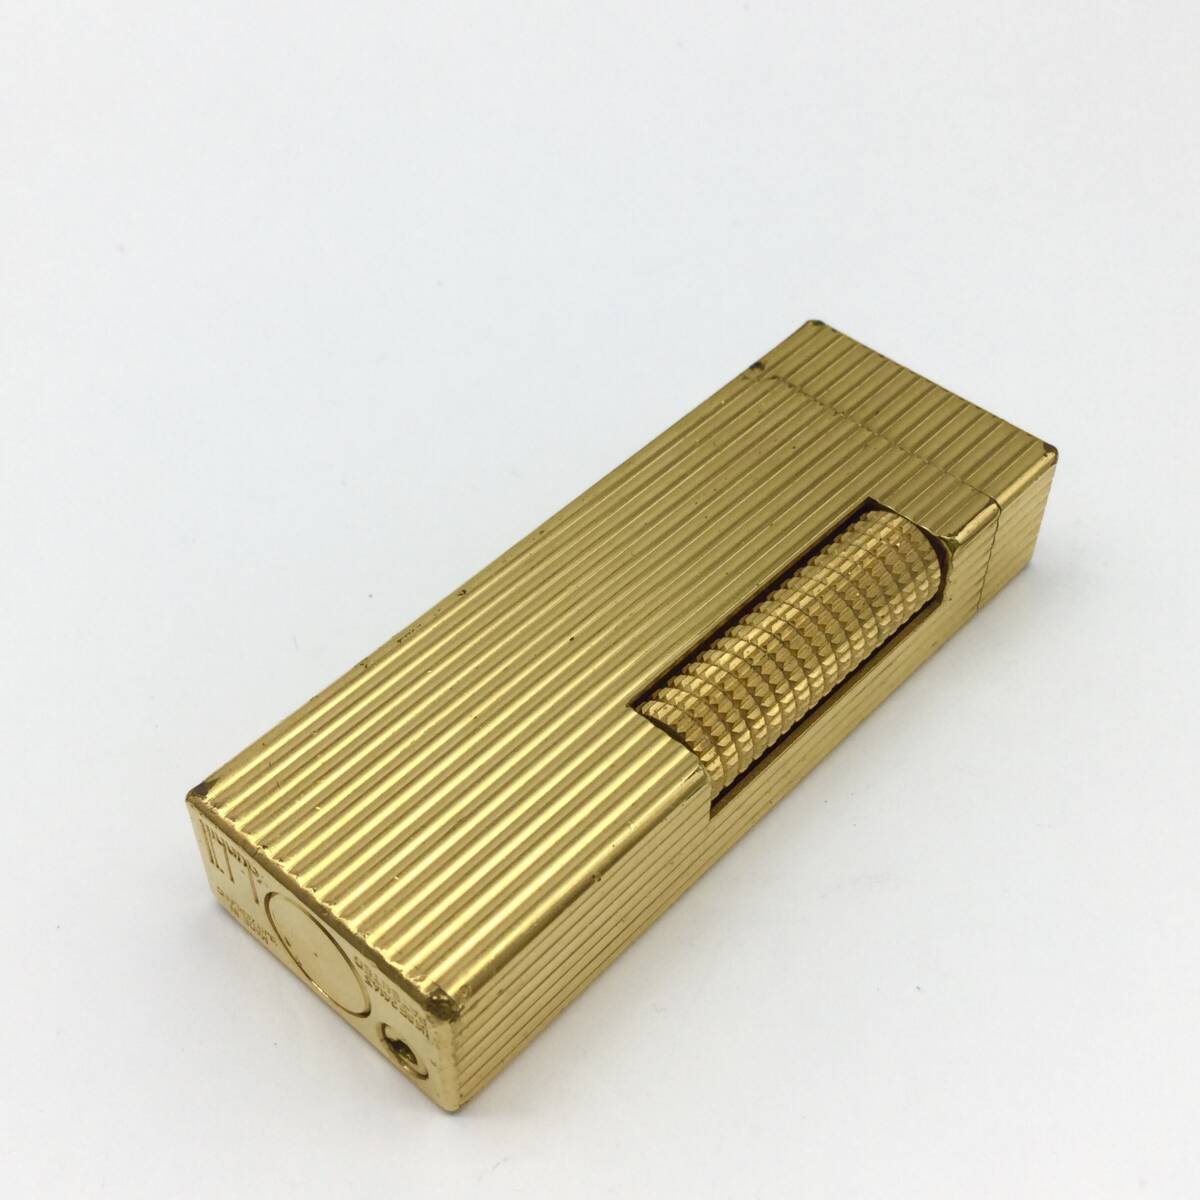 【9414】着火確認済み dunhill ダンヒル ローラーガスライター ゴールドカラー 金色 ストライプ 喫煙具 喫煙グッズ 愛煙具_画像2